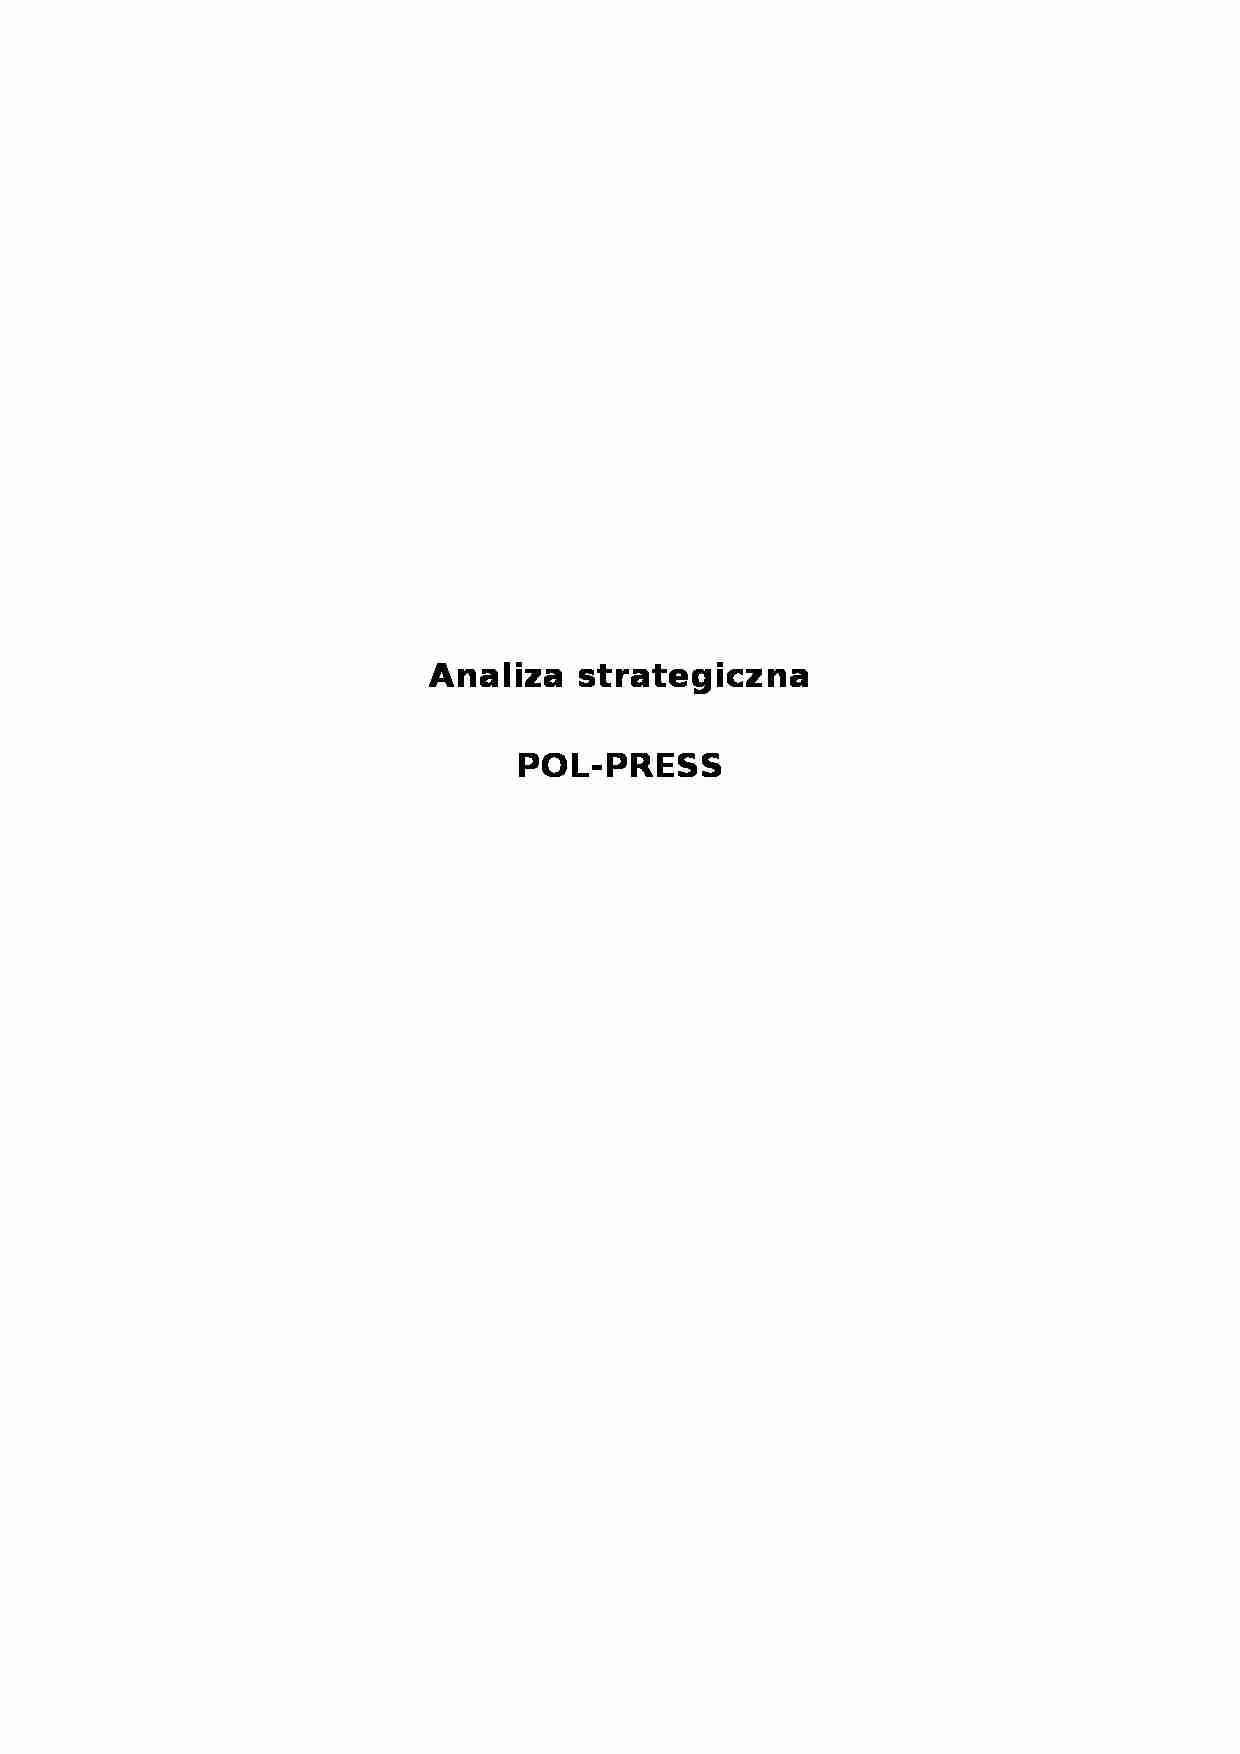 Analiza strategiczna - Pol-Press - historia - strona 1